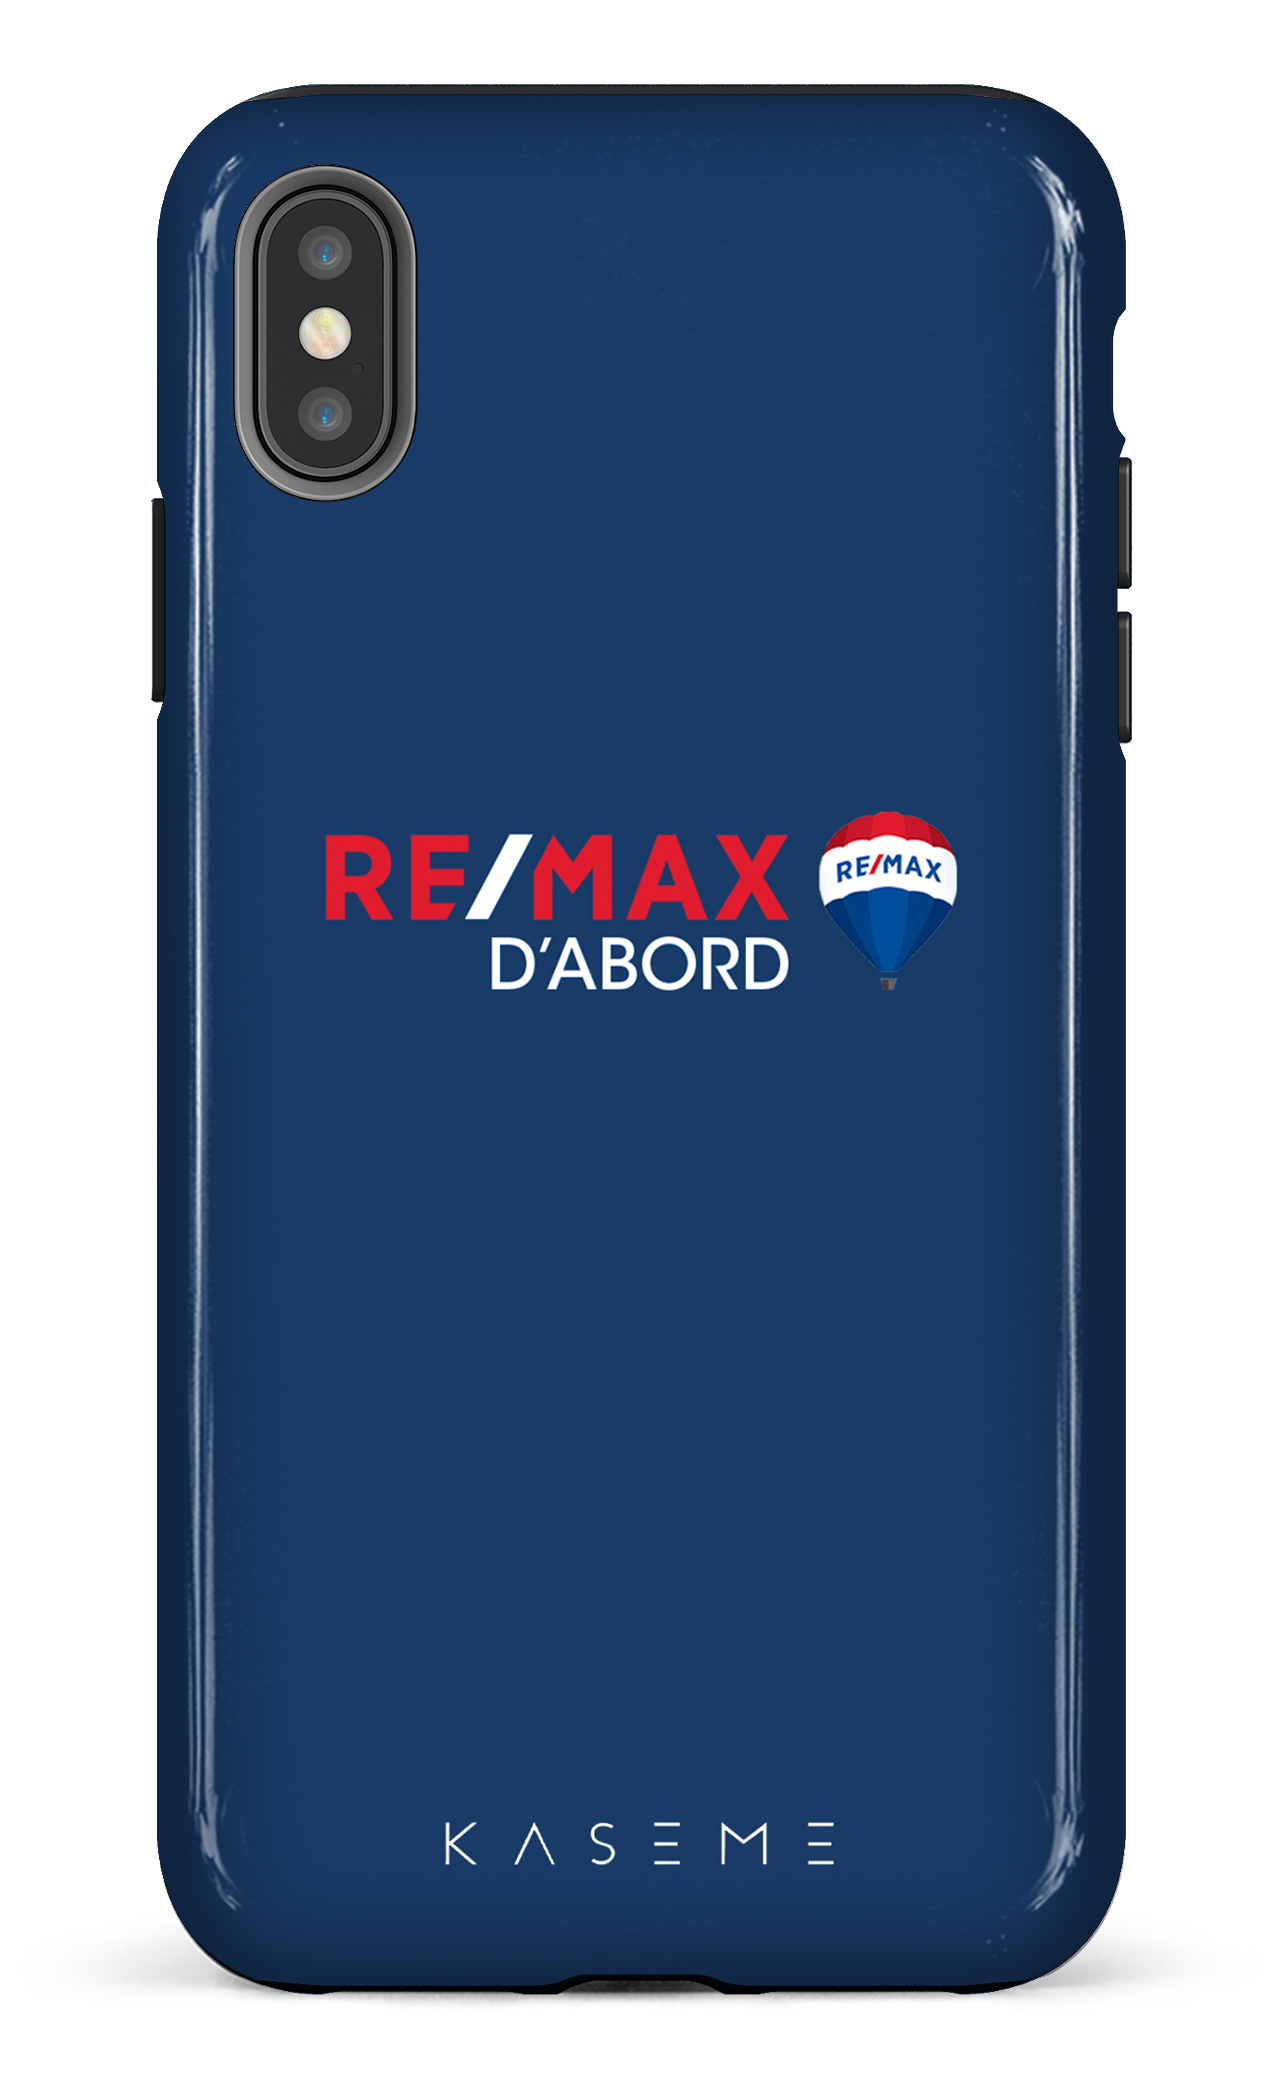 Remax D'abord Bleu - iPhone XS Max